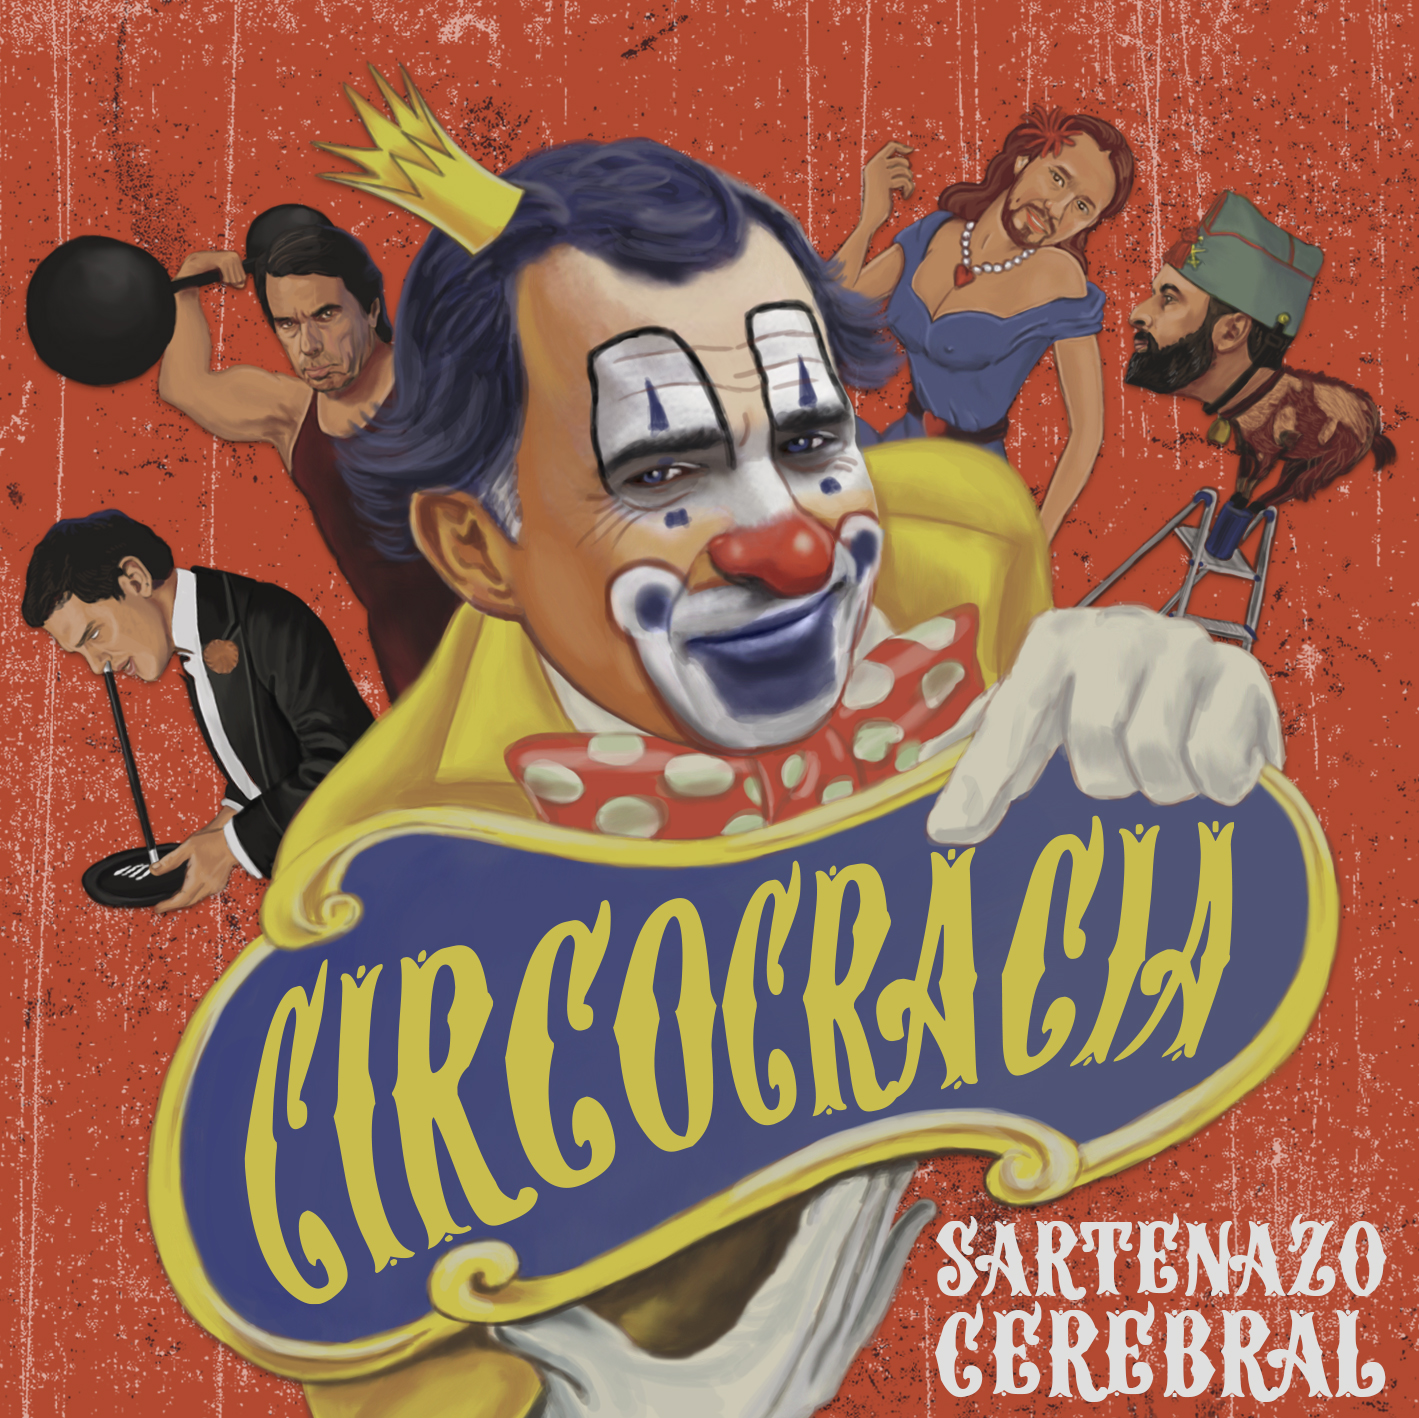 Circocracia es el nuevo disco de la banda avilesina Sartenazo Cerebral